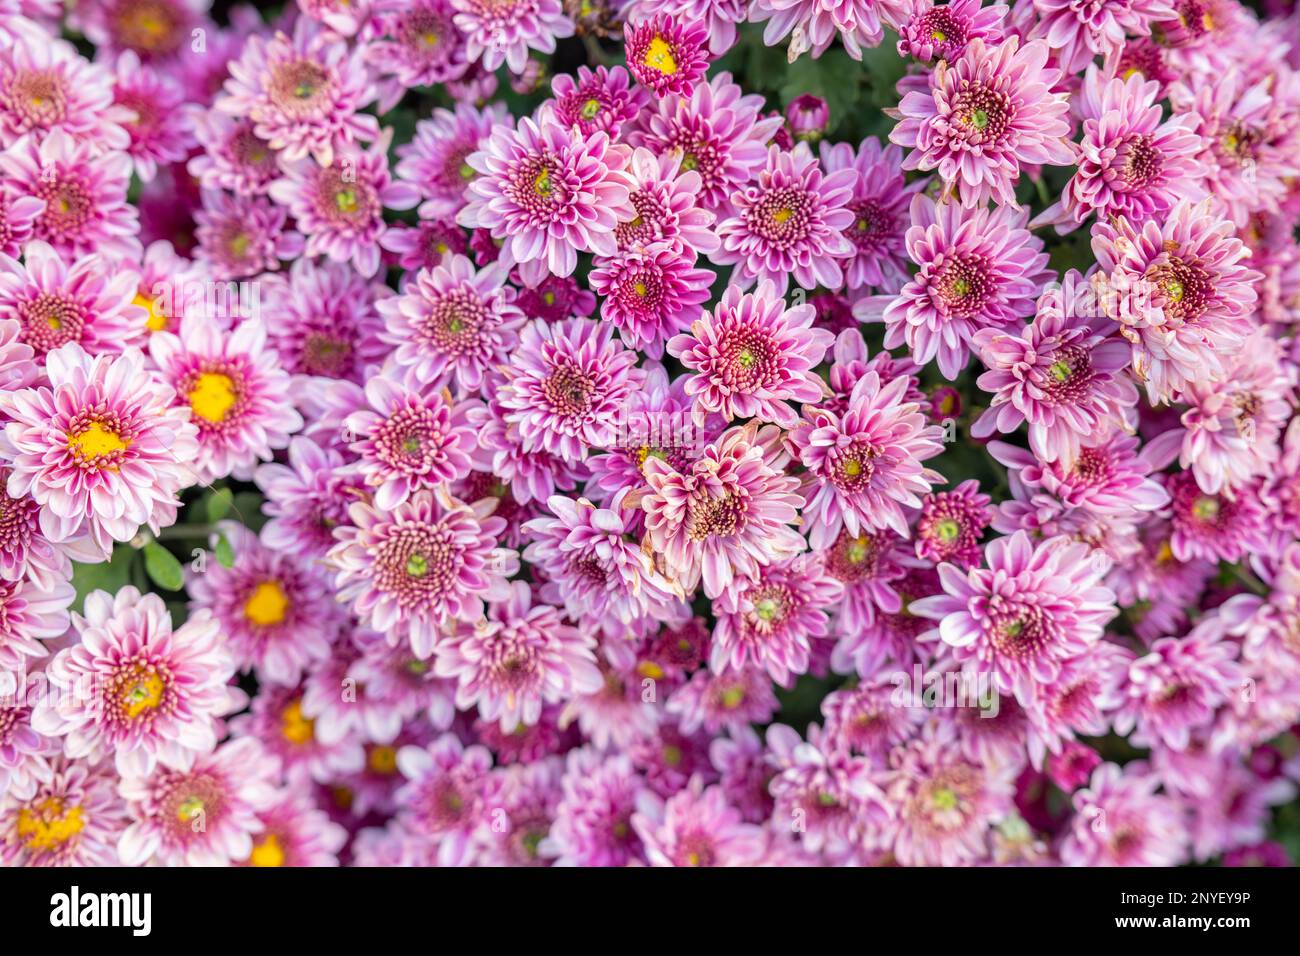 Motif chrysanthème dans le parc de fleurs. Groupe de fleurs de chrysanthème rose. Vue de dessus. Parfait pour le design, les cartes, l'impression. Banque D'Images